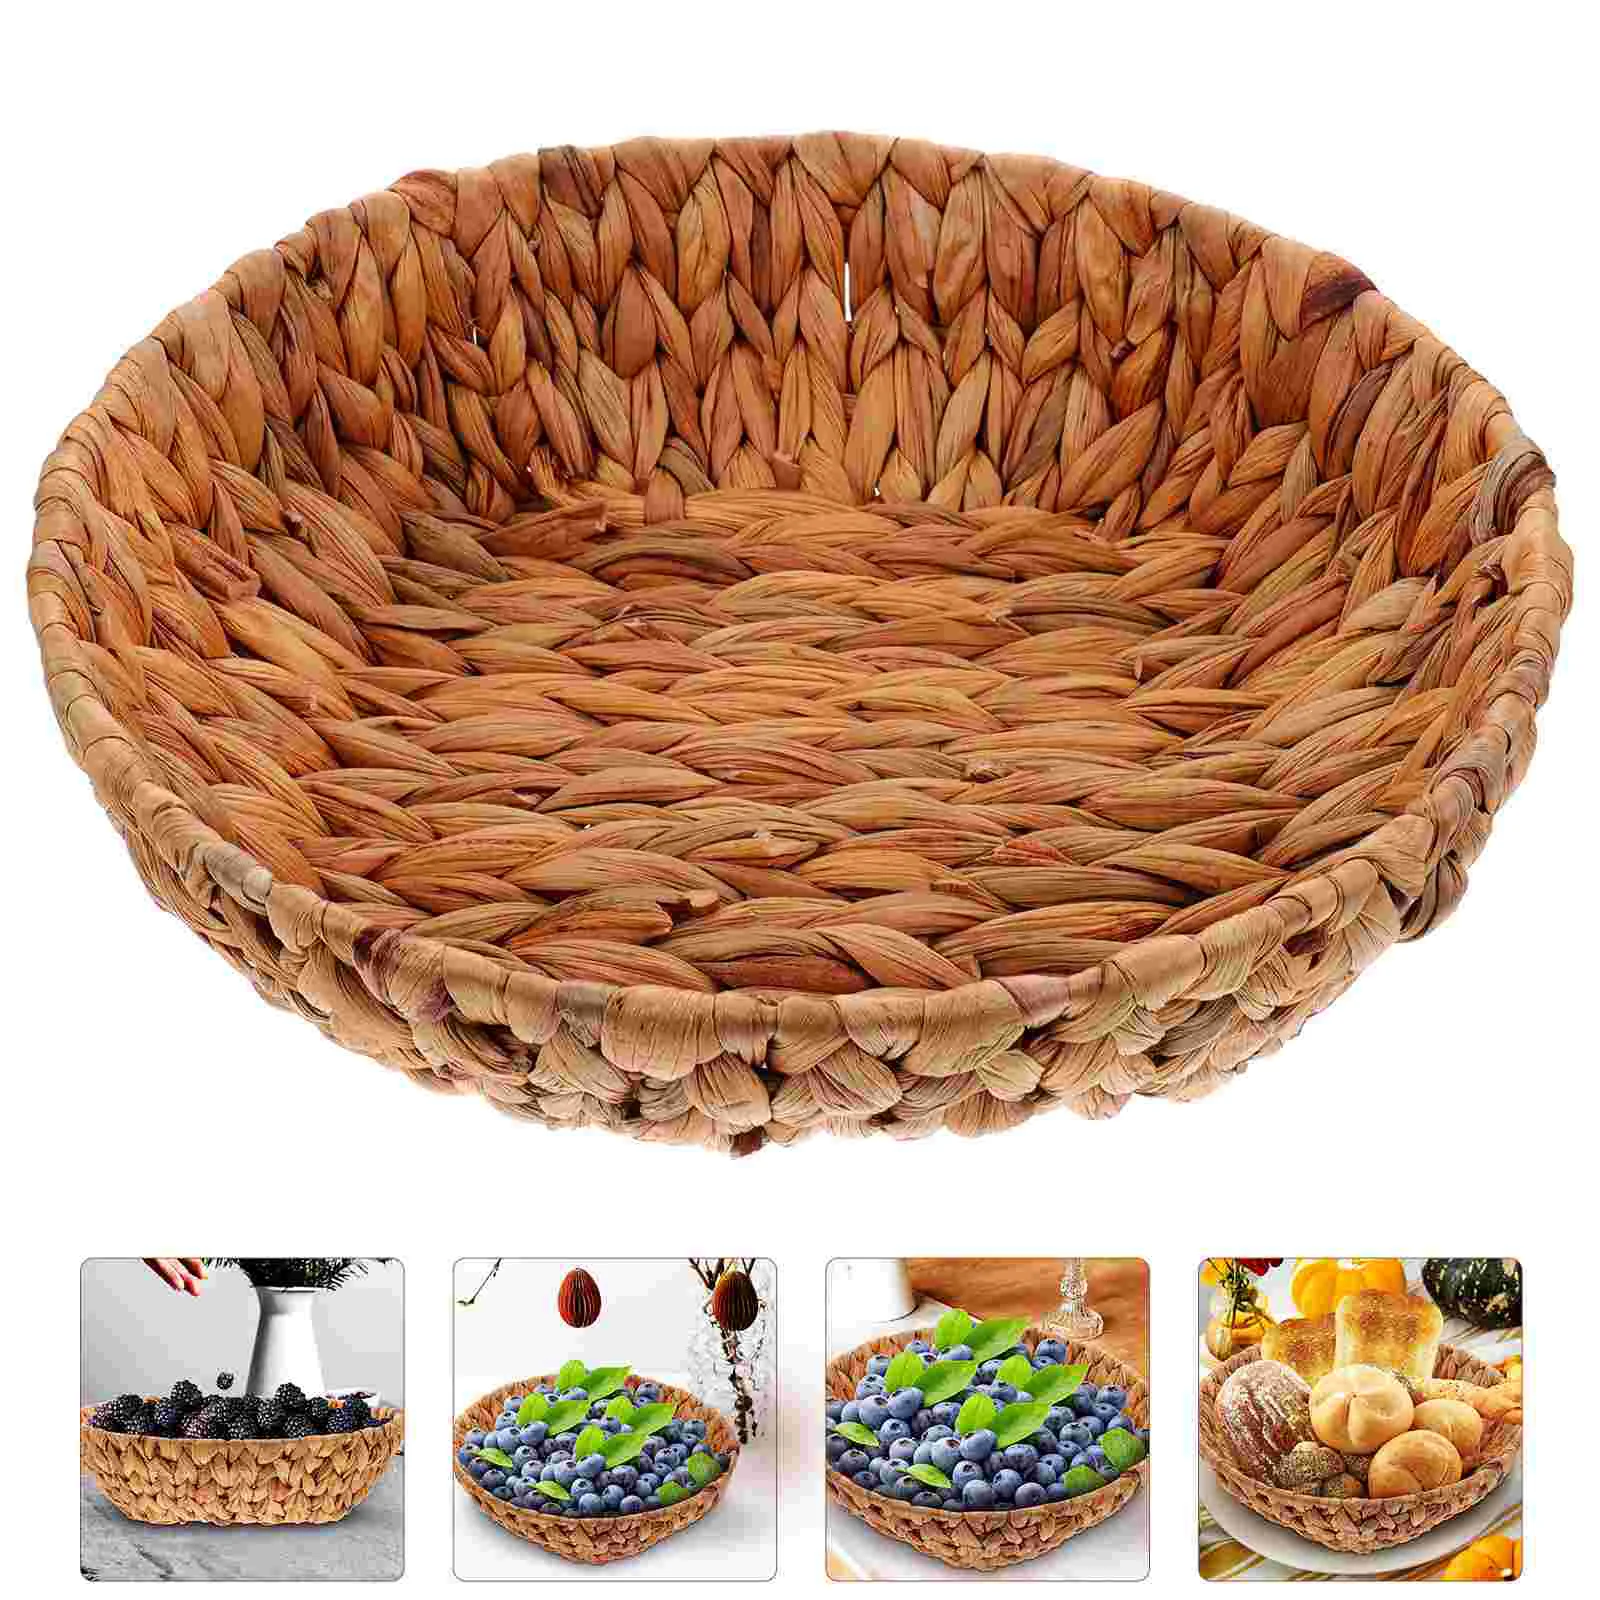 

Zero Round Woven Storage Baskets Grass Storage Dried Nut Fruit Organizer Container Vegetables Serving Basket